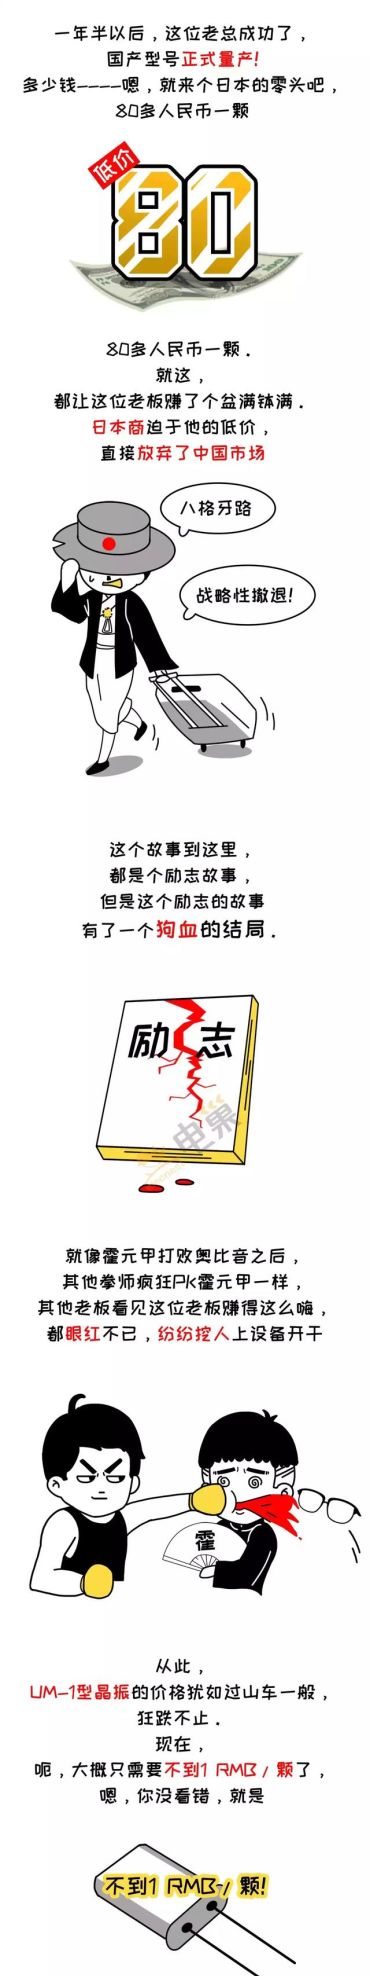 中国电子元器件干爆日本制造的小故事丨漫画剧场